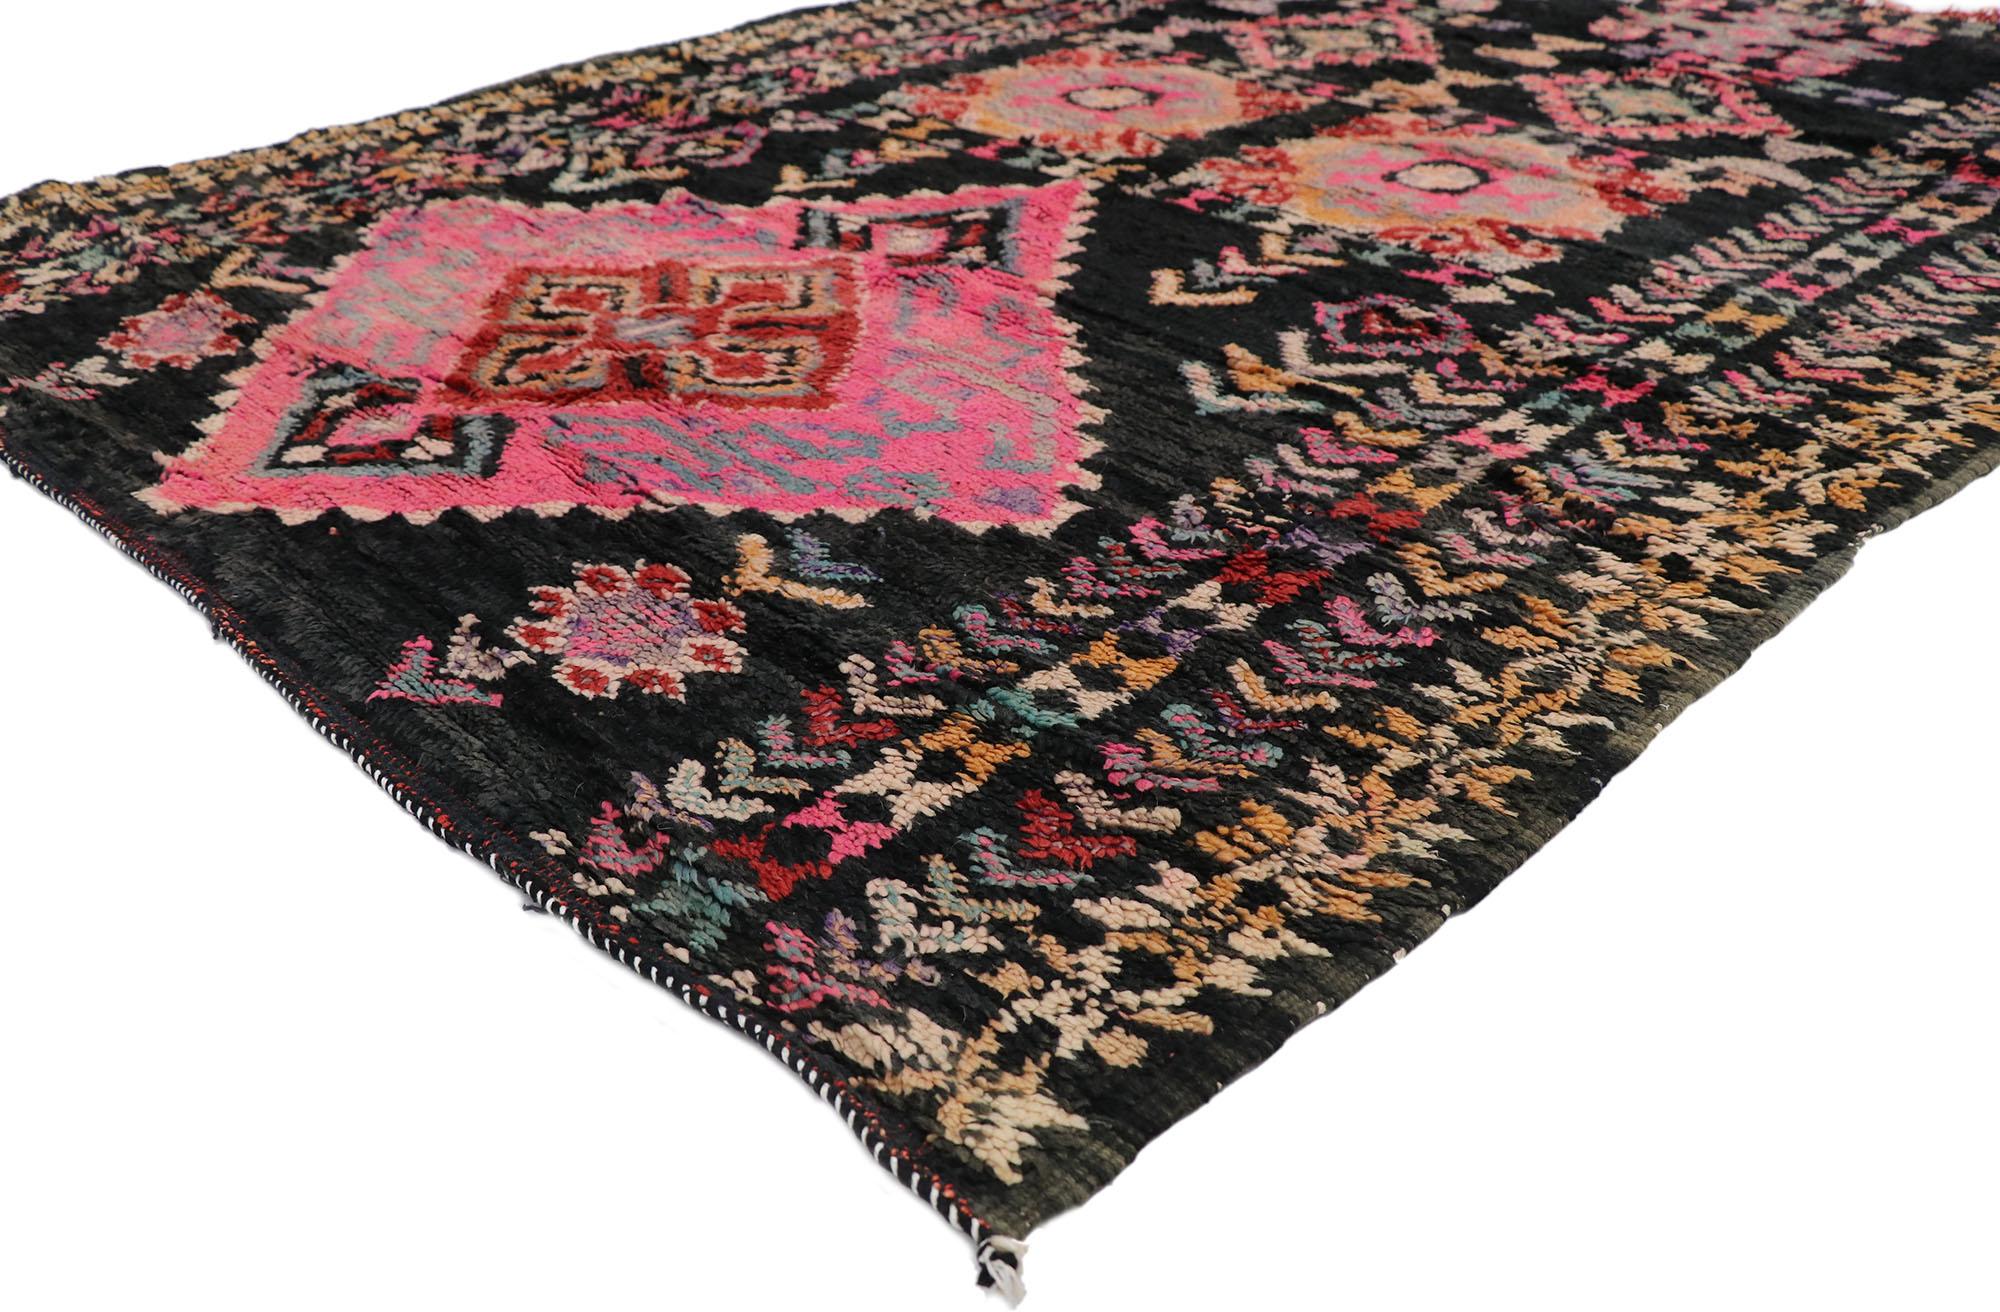 21259 Marokkanischer Vintage-Teppich, 05'08 x 07'06.
Dieser handgeknüpfte marokkanische Wollteppich im Vintage-Stil besticht durch sein kühnes Stammesmuster, seine unglaubliche Detailtreue und seine Textur und ist eine faszinierende Vision gewebter